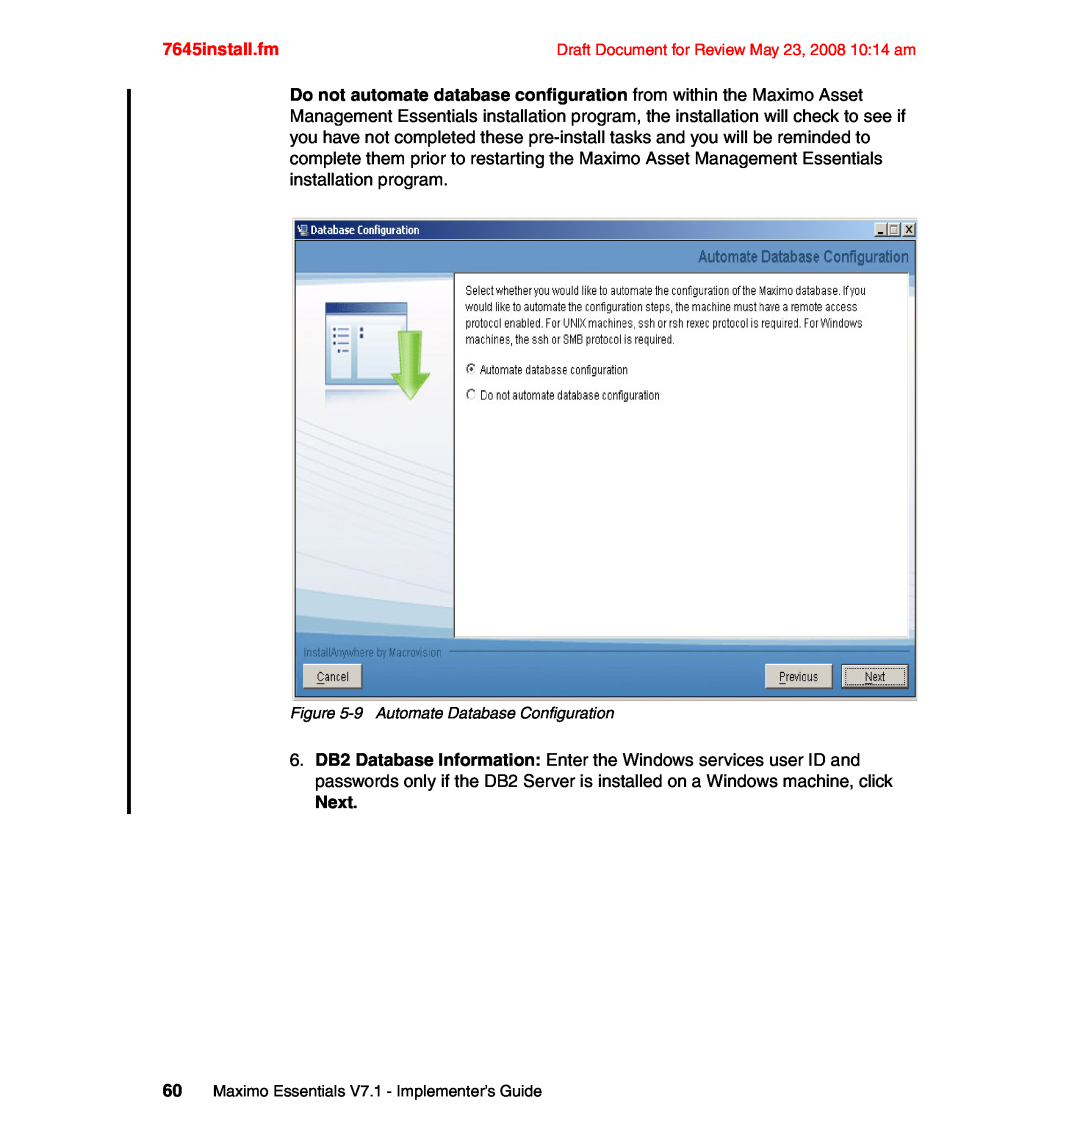 IBM SG24-7645-00 manual Next, 7645install.fm 